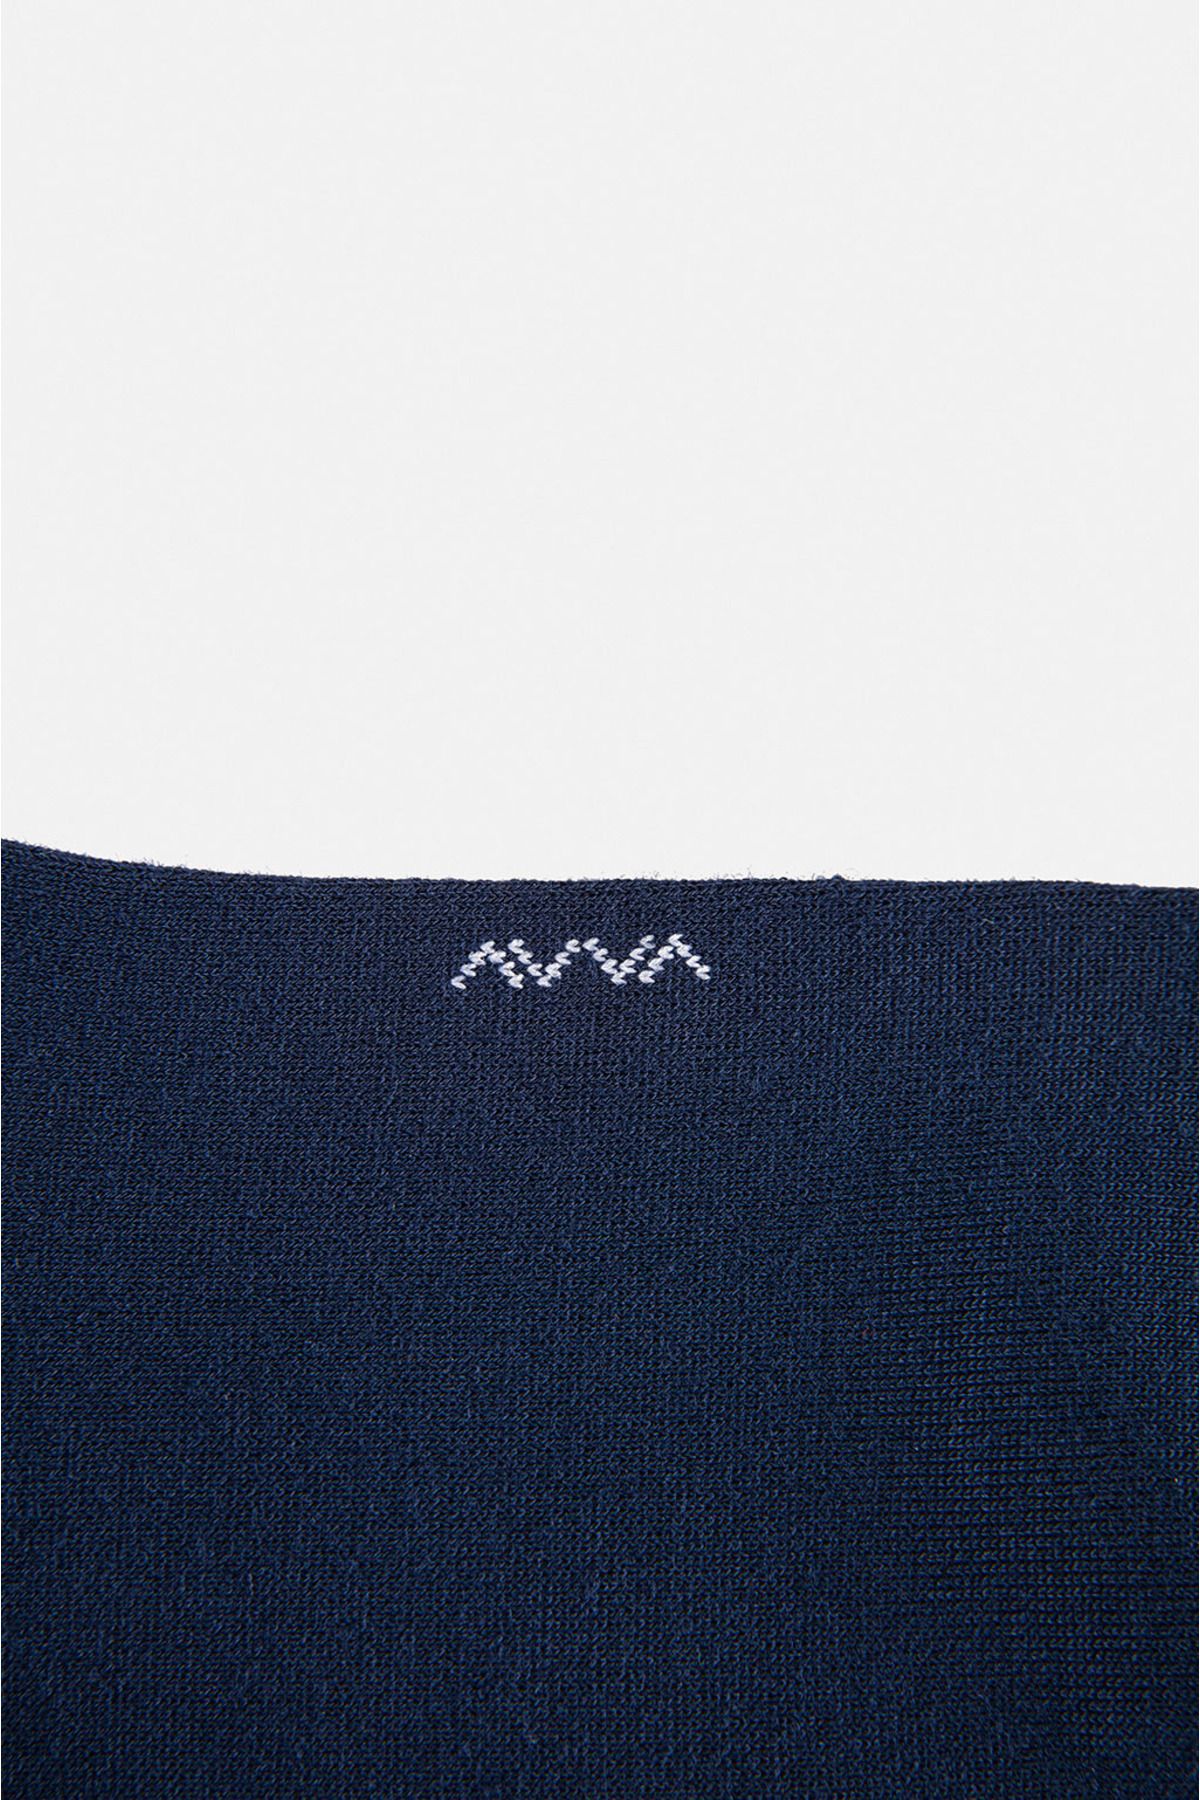 Avva جورابهای سوکت بامبو مسطح آبی مردانه E008501